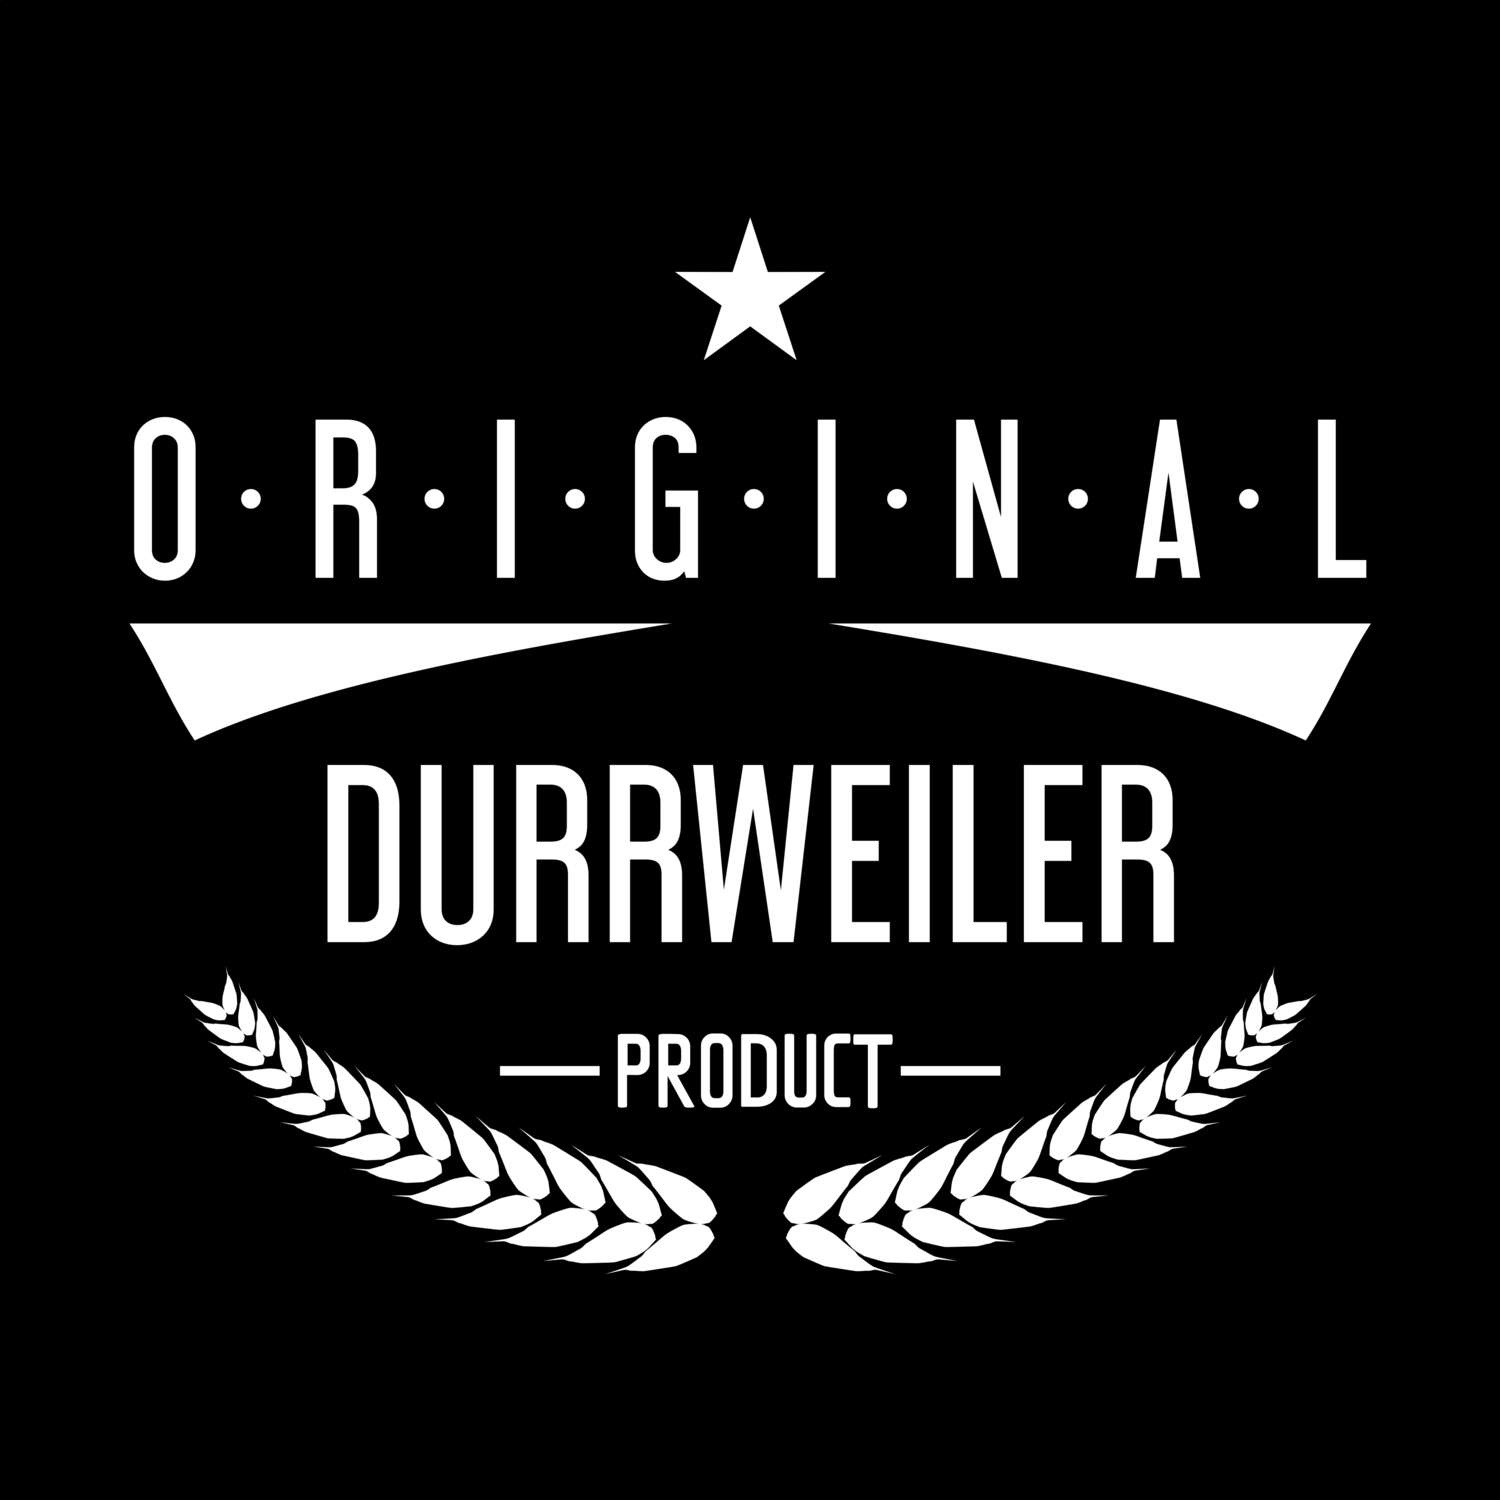 Durrweiler T-Shirt »Original Product«